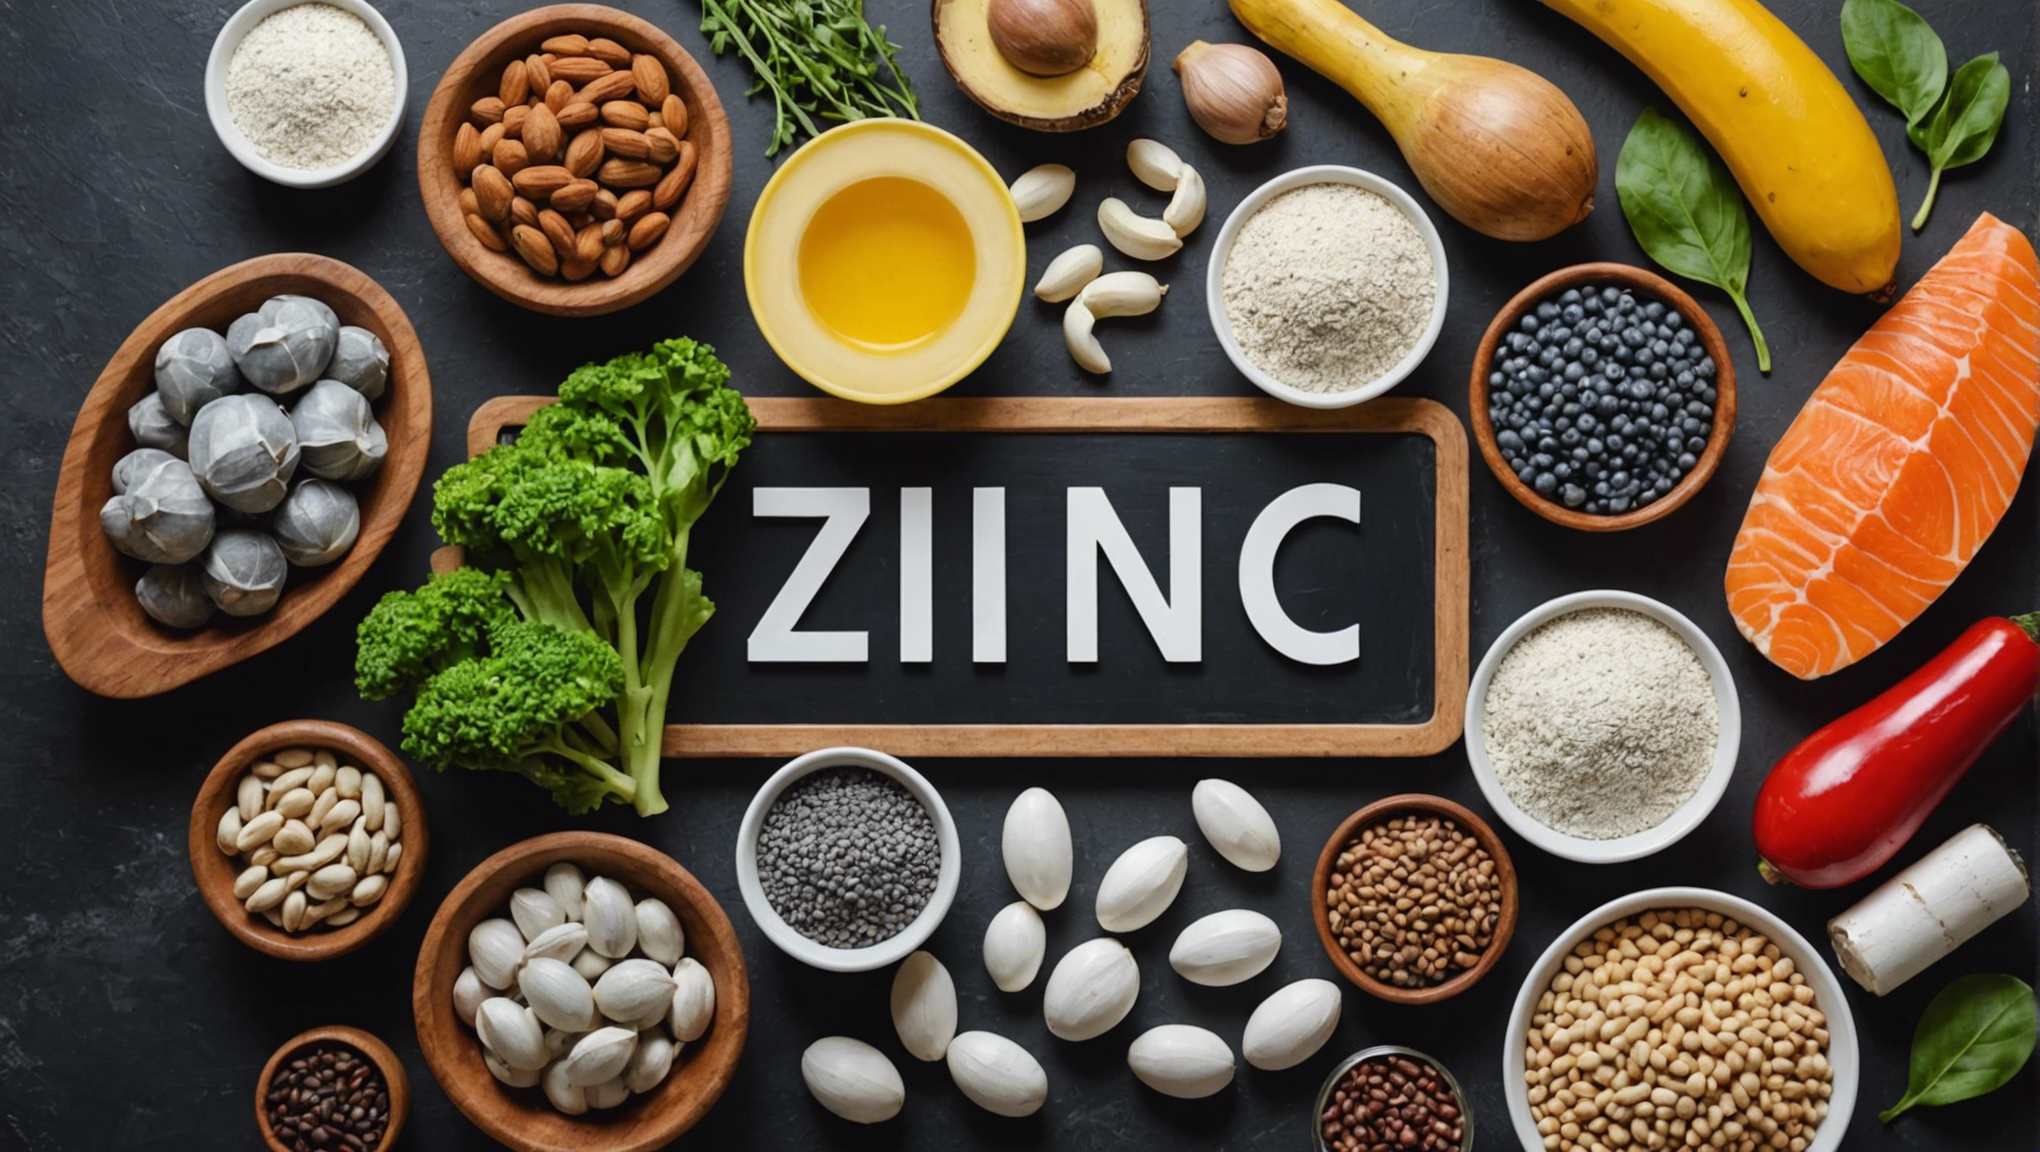 découvrez l'importance du zinc aliment pour votre santé et ses nombreux bienfaits. apprenez pourquoi il est essentiel et comment l'intégrer dans votre alimentation équilibrée.